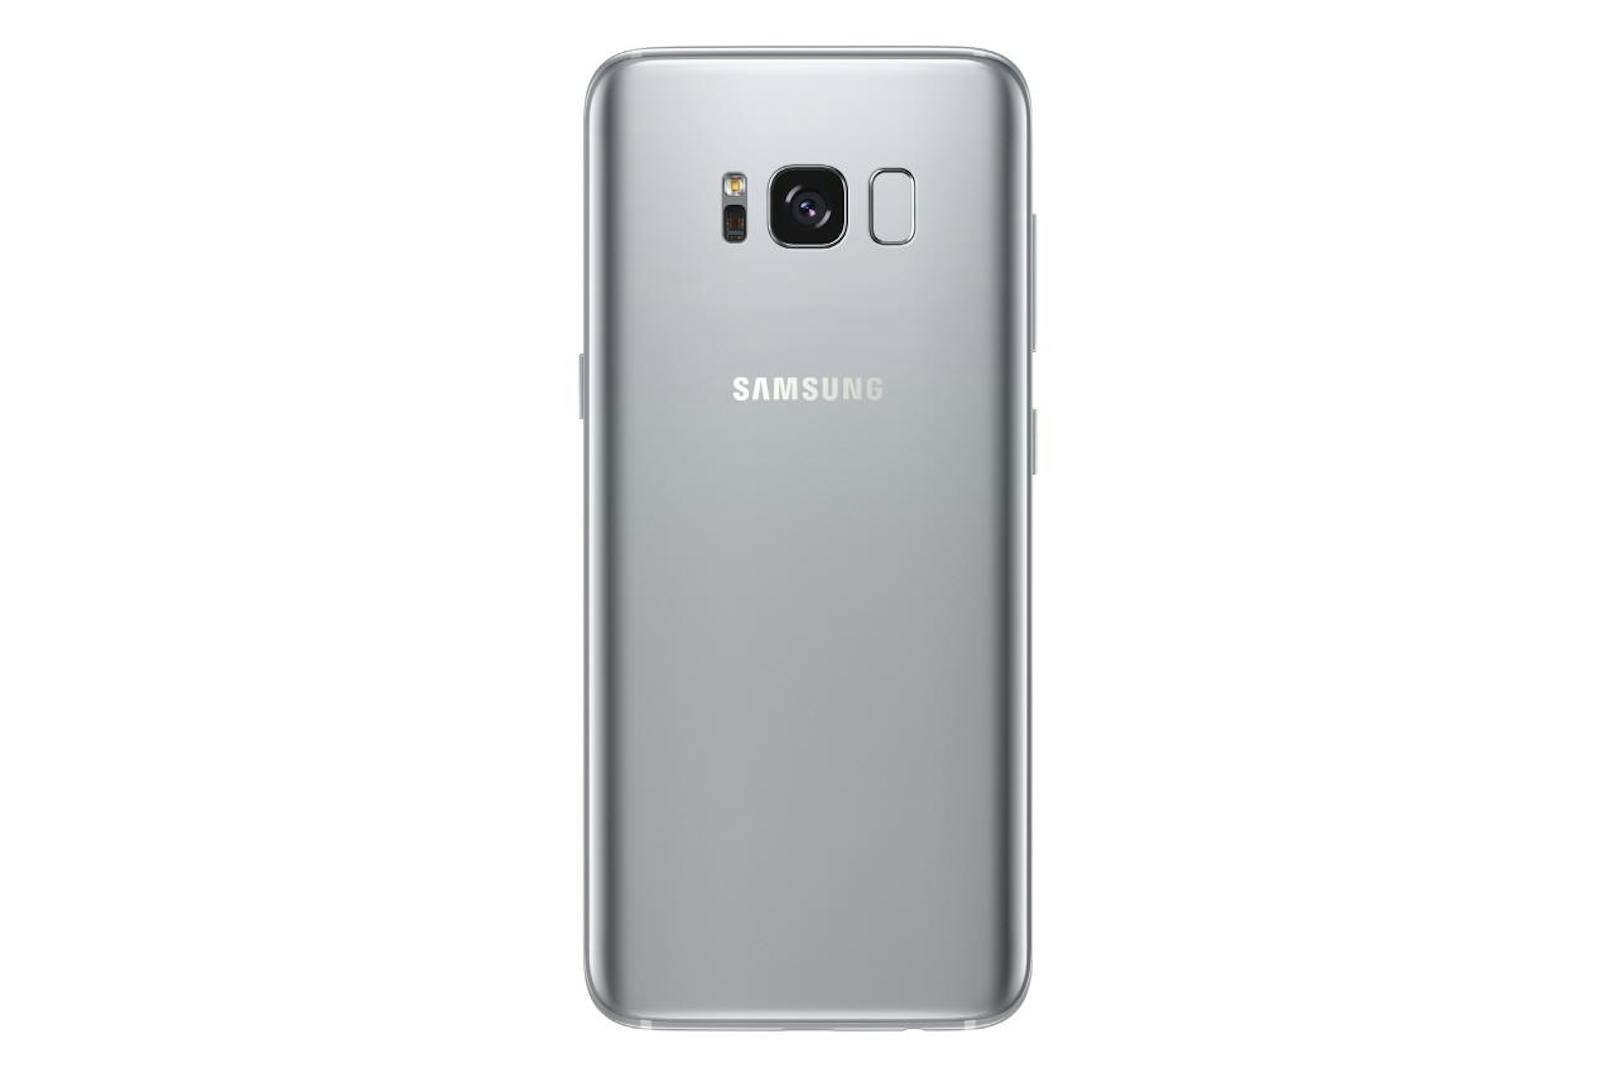 Zwei Varianten des Smartphones wird es geben, das Galaxy S8 und das Galaxy S8+. Beide Modelle liefern eine Auflösung von 2.960 x 1.440 Pixel am AMOLED-Display.